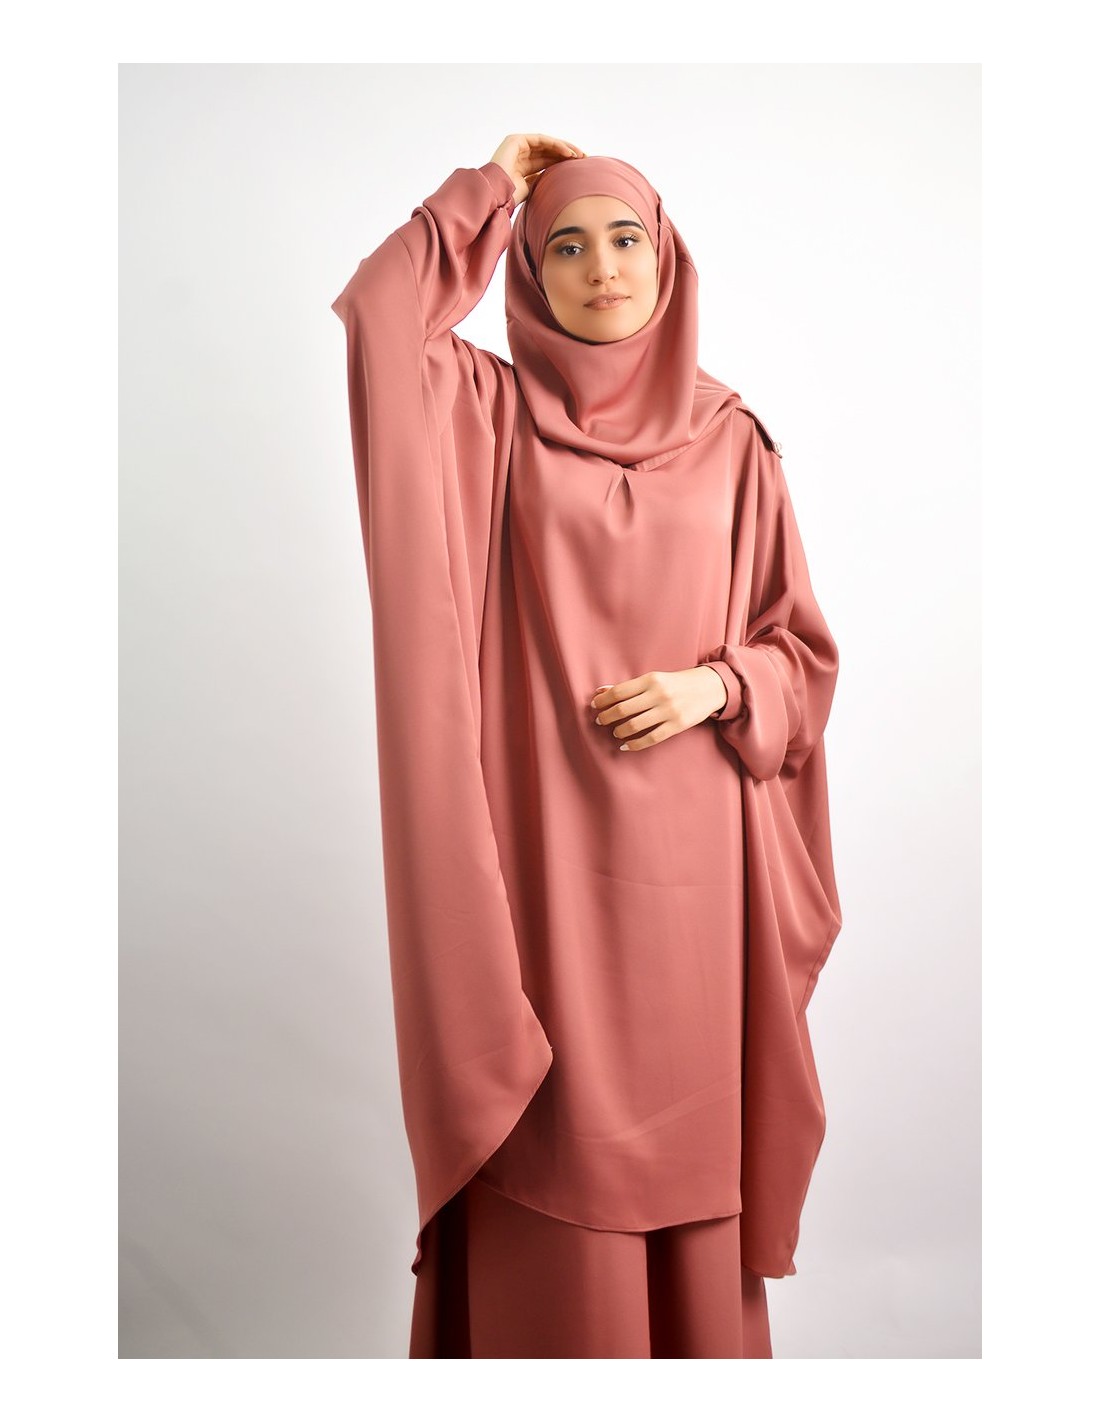 Ensemble Tunique avec hijab intégré + jupe